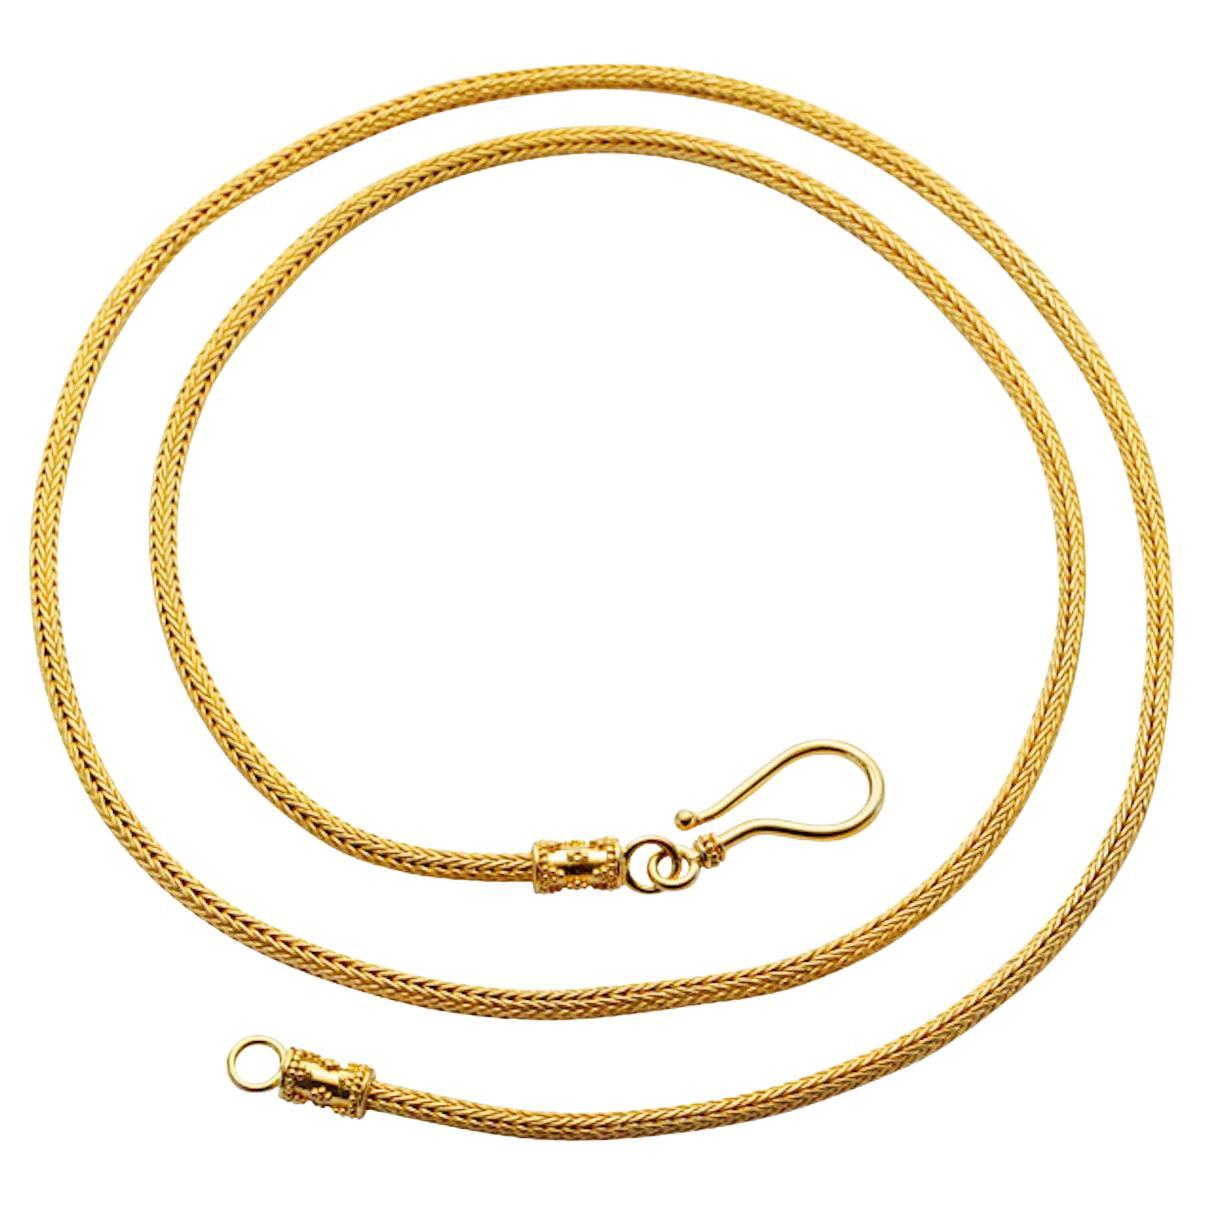 Steven Battelle Handwoven 22K 22 Inch Gold Snake Chain For Sale